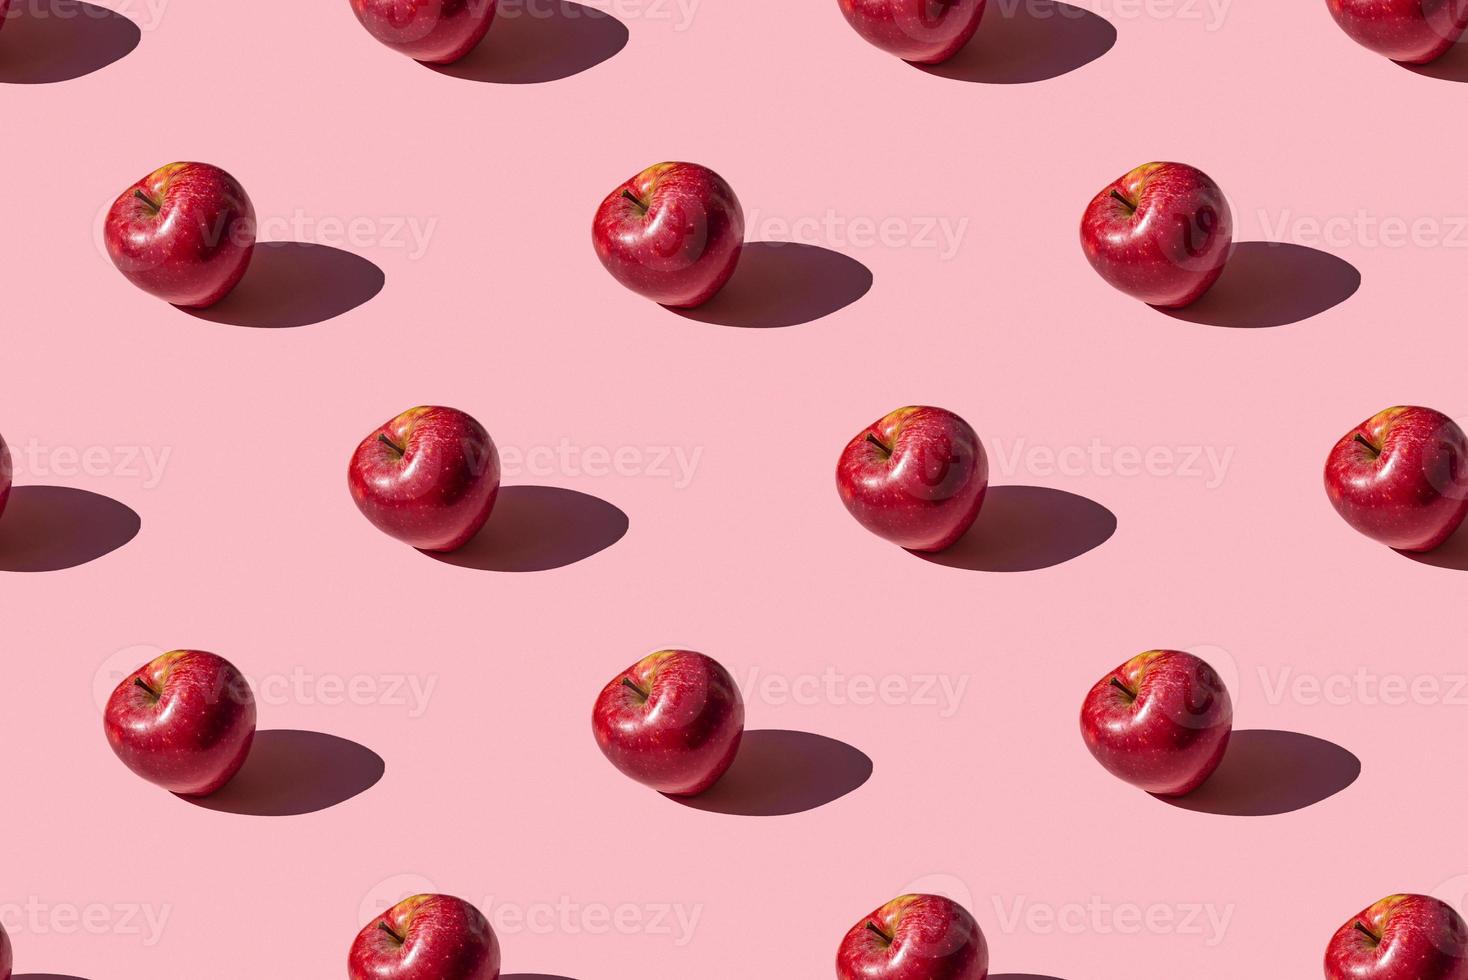 padrão perfeito de uma foto de uma maçã vermelha madura fresca em um fundo rosa